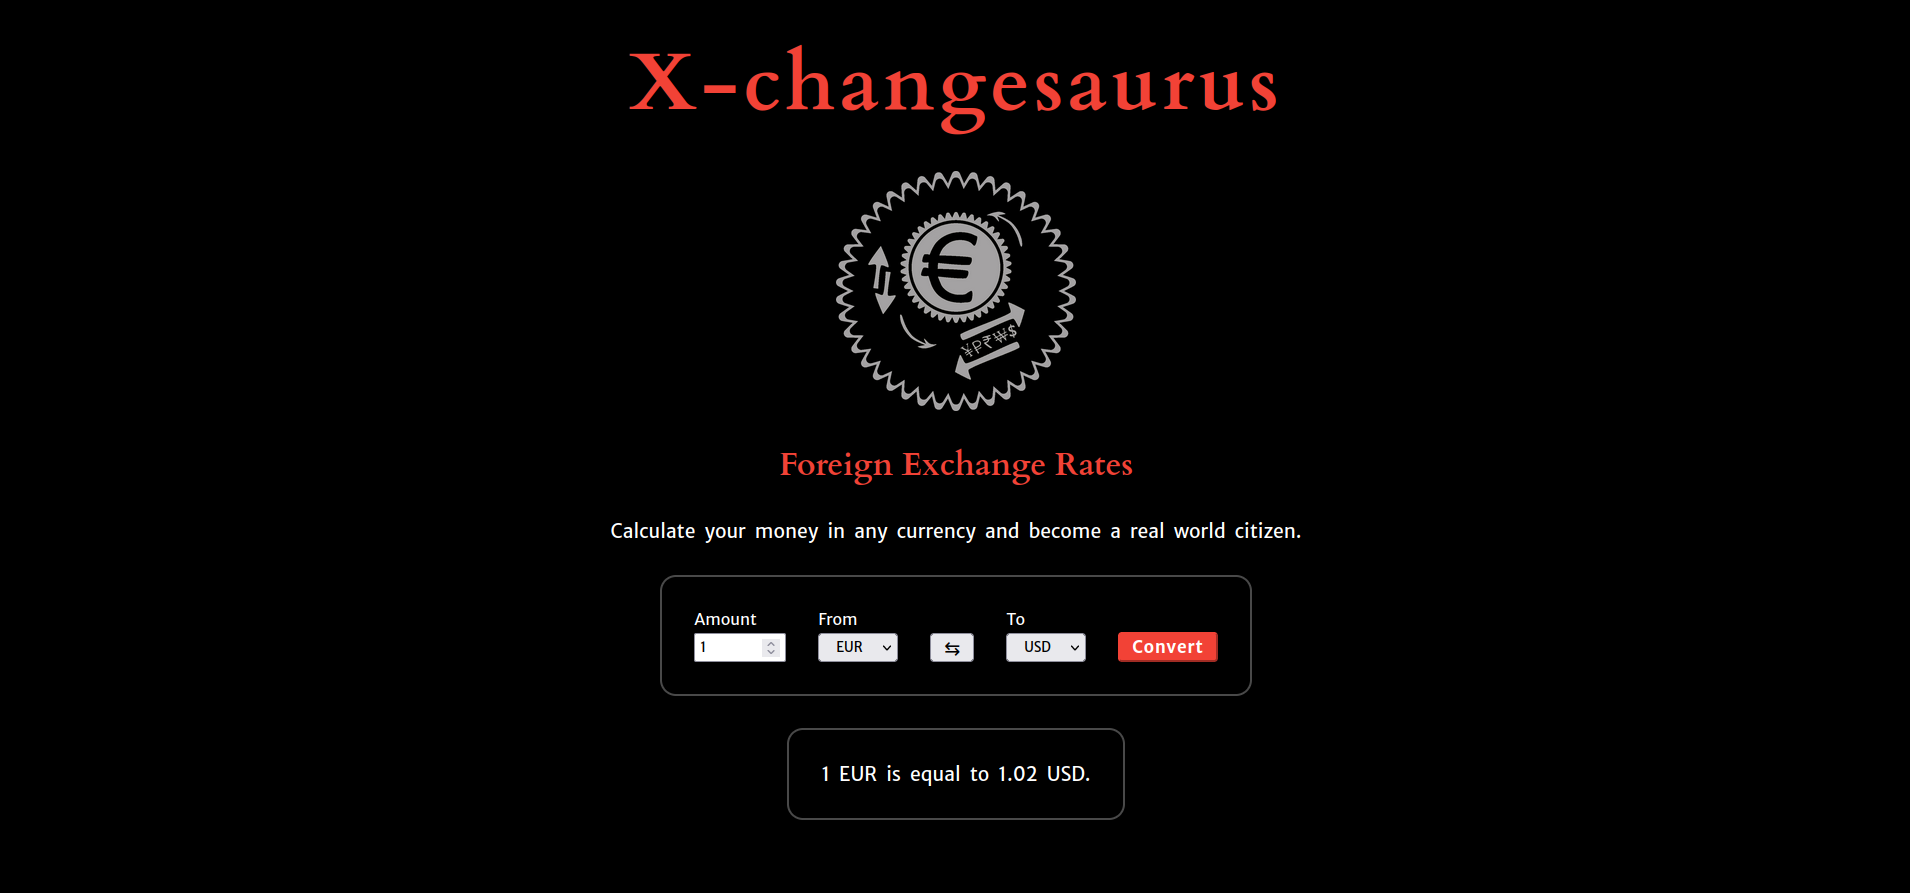 Image of X-changesaurus website.